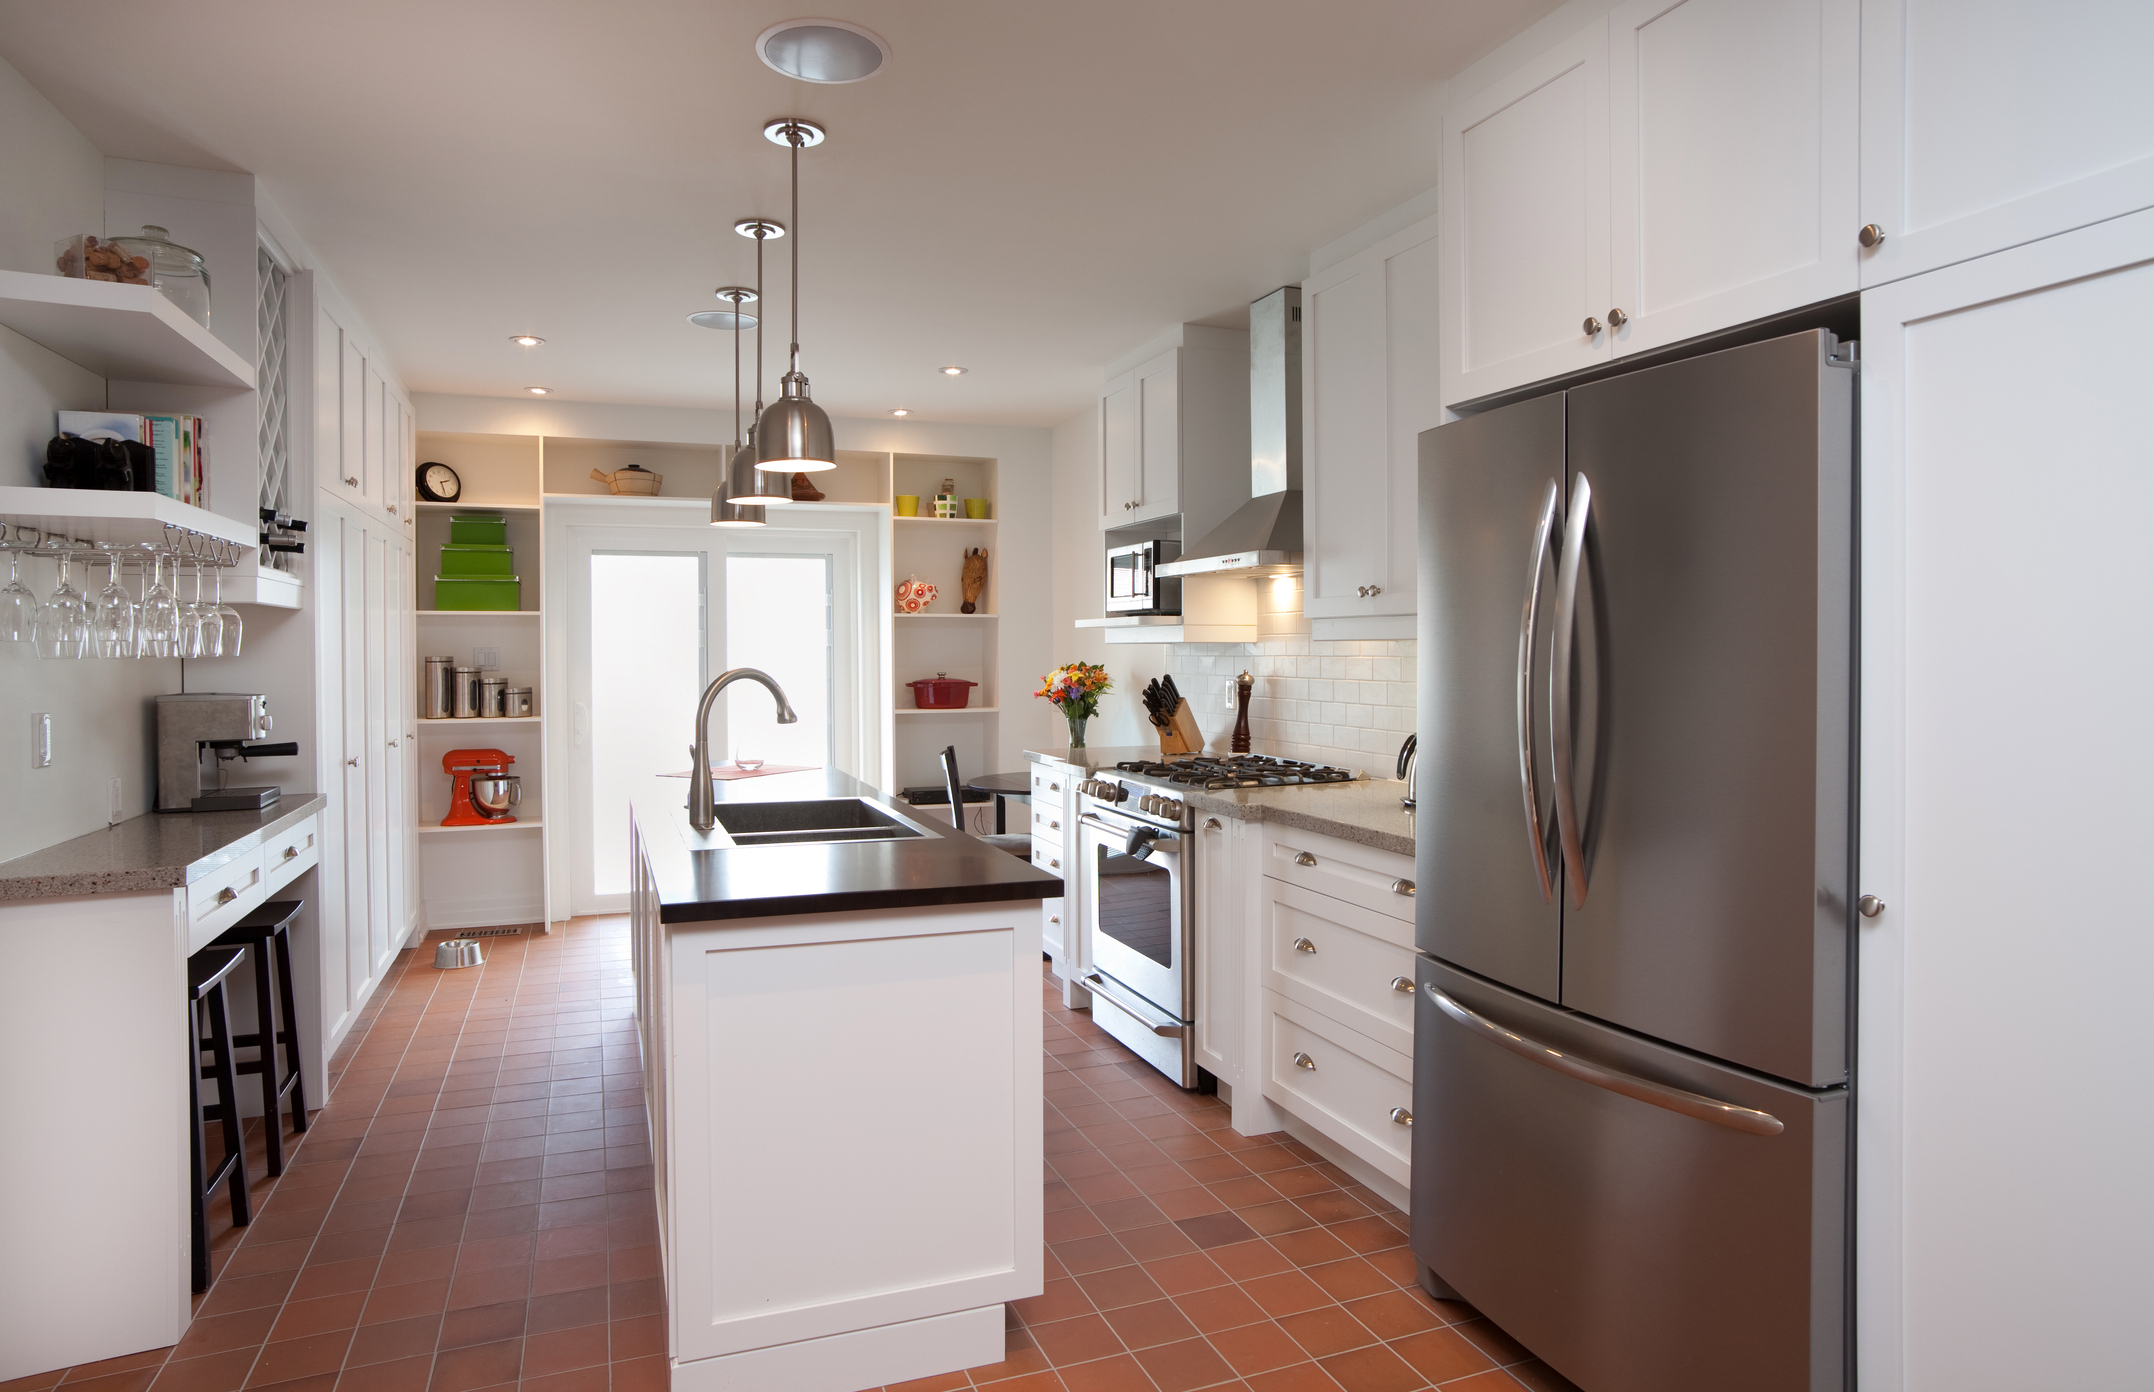 Explore Dependable Kitchen Appliances